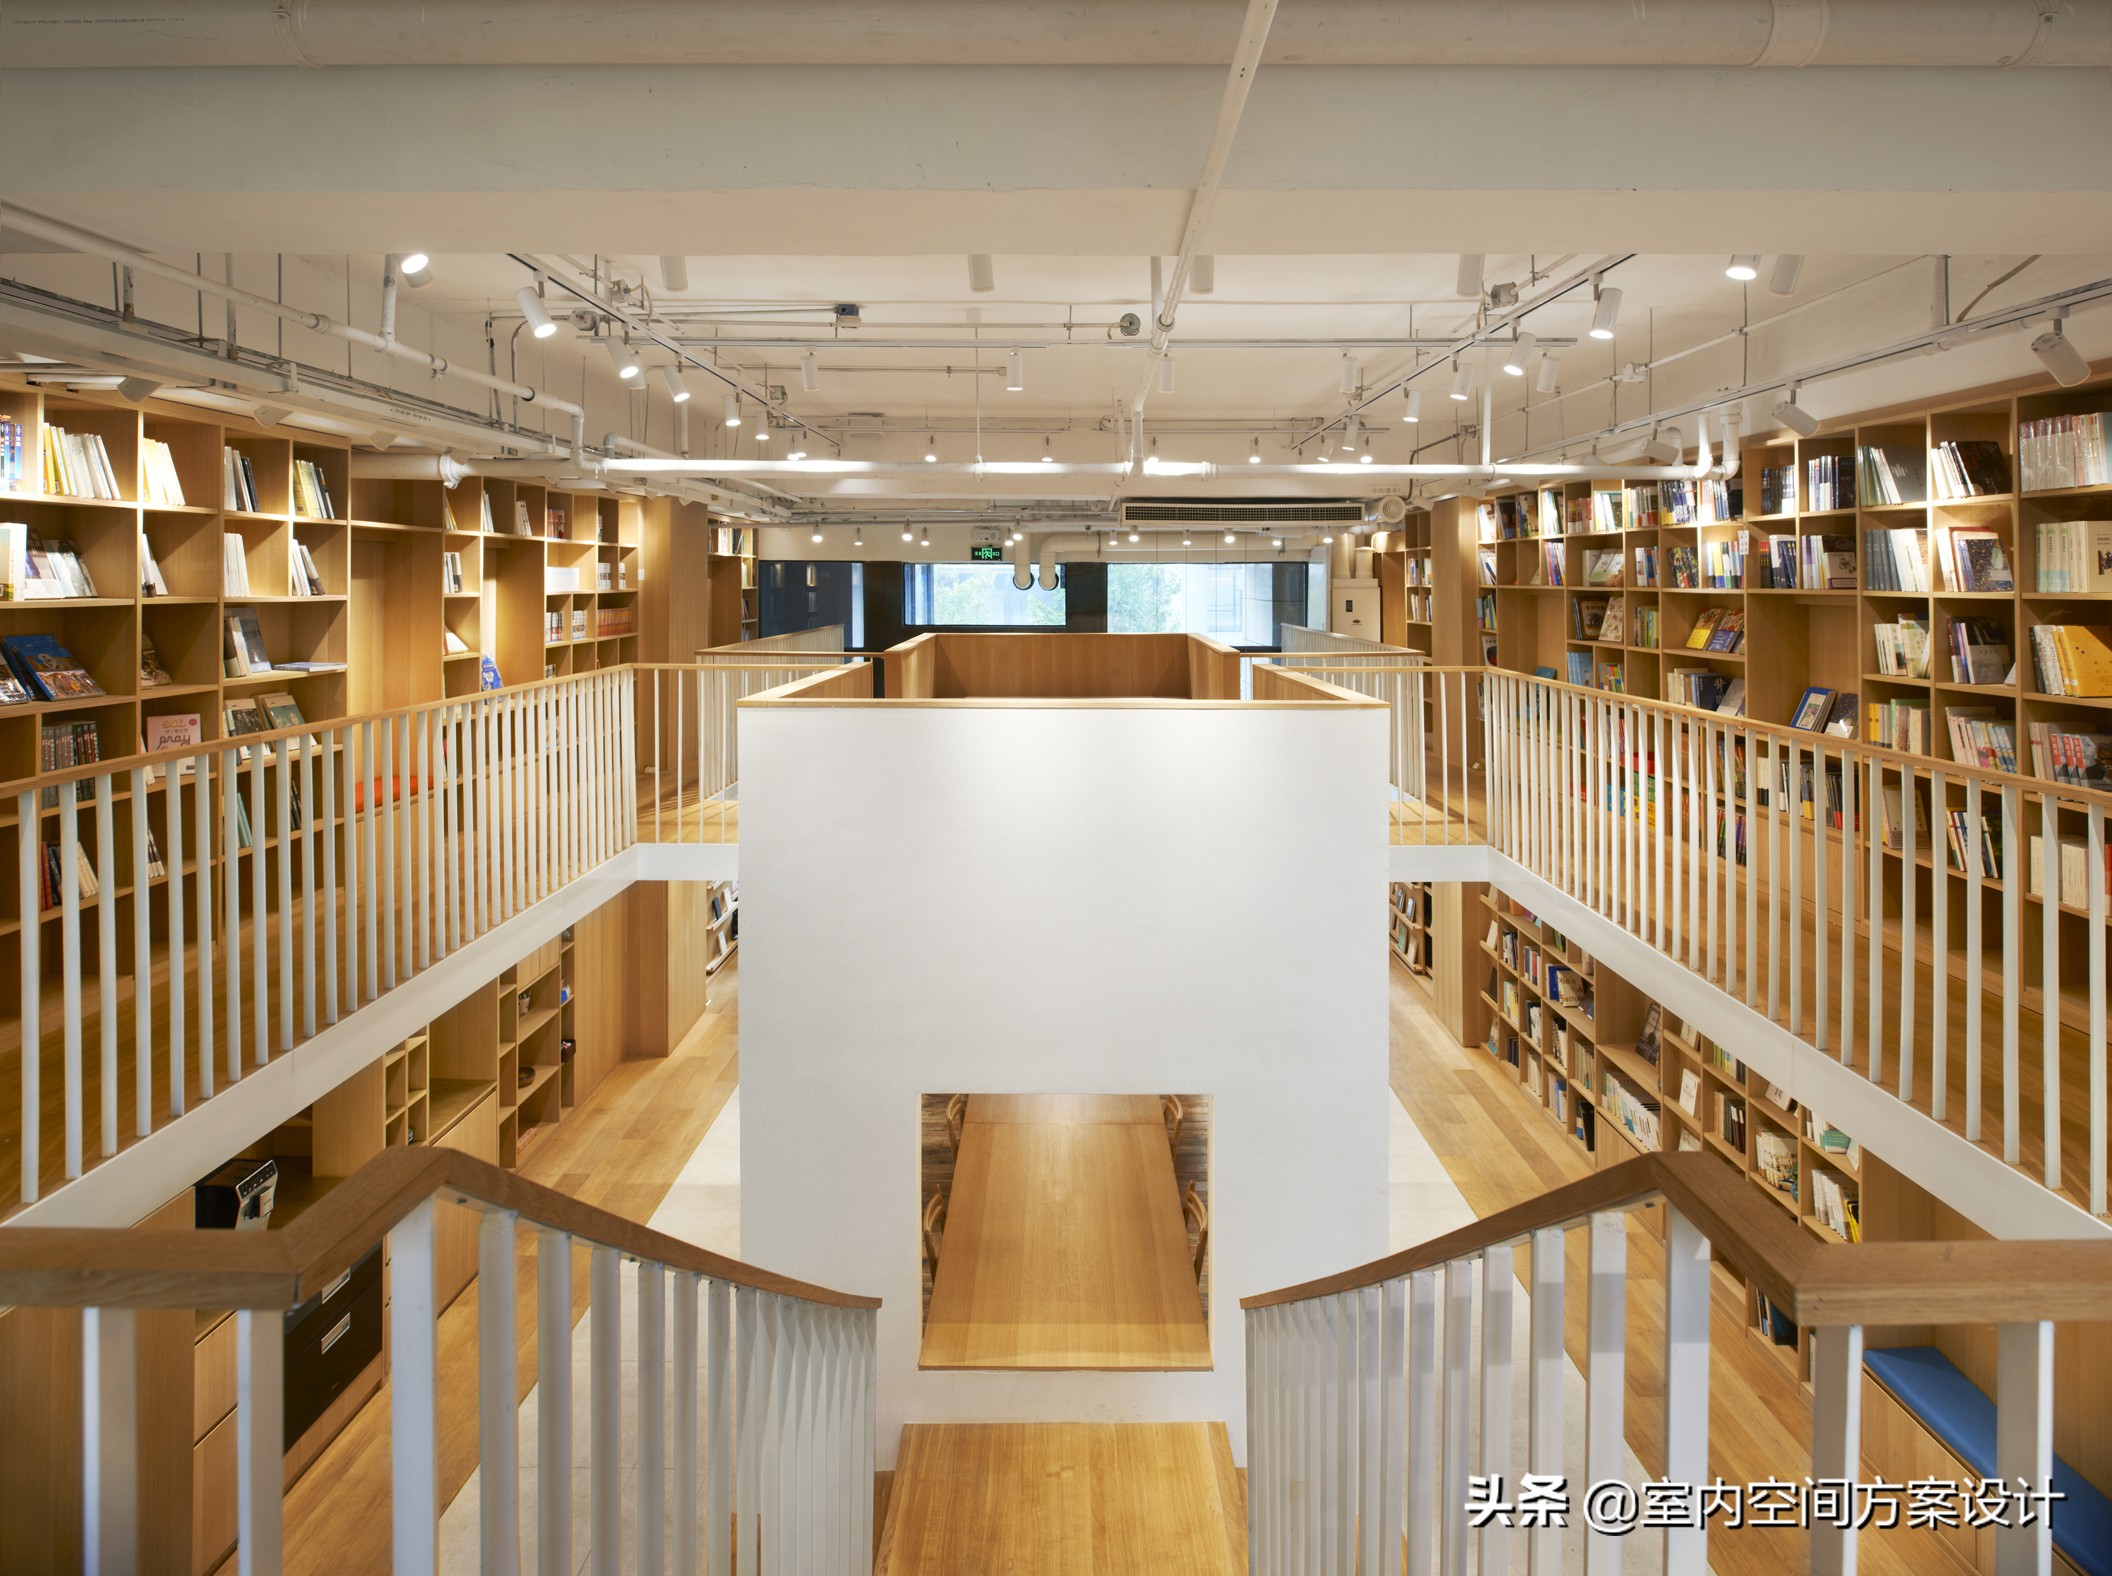 日本設計師B.L.U.E.青山周平丨室內設計案例合集28套丨免費分享